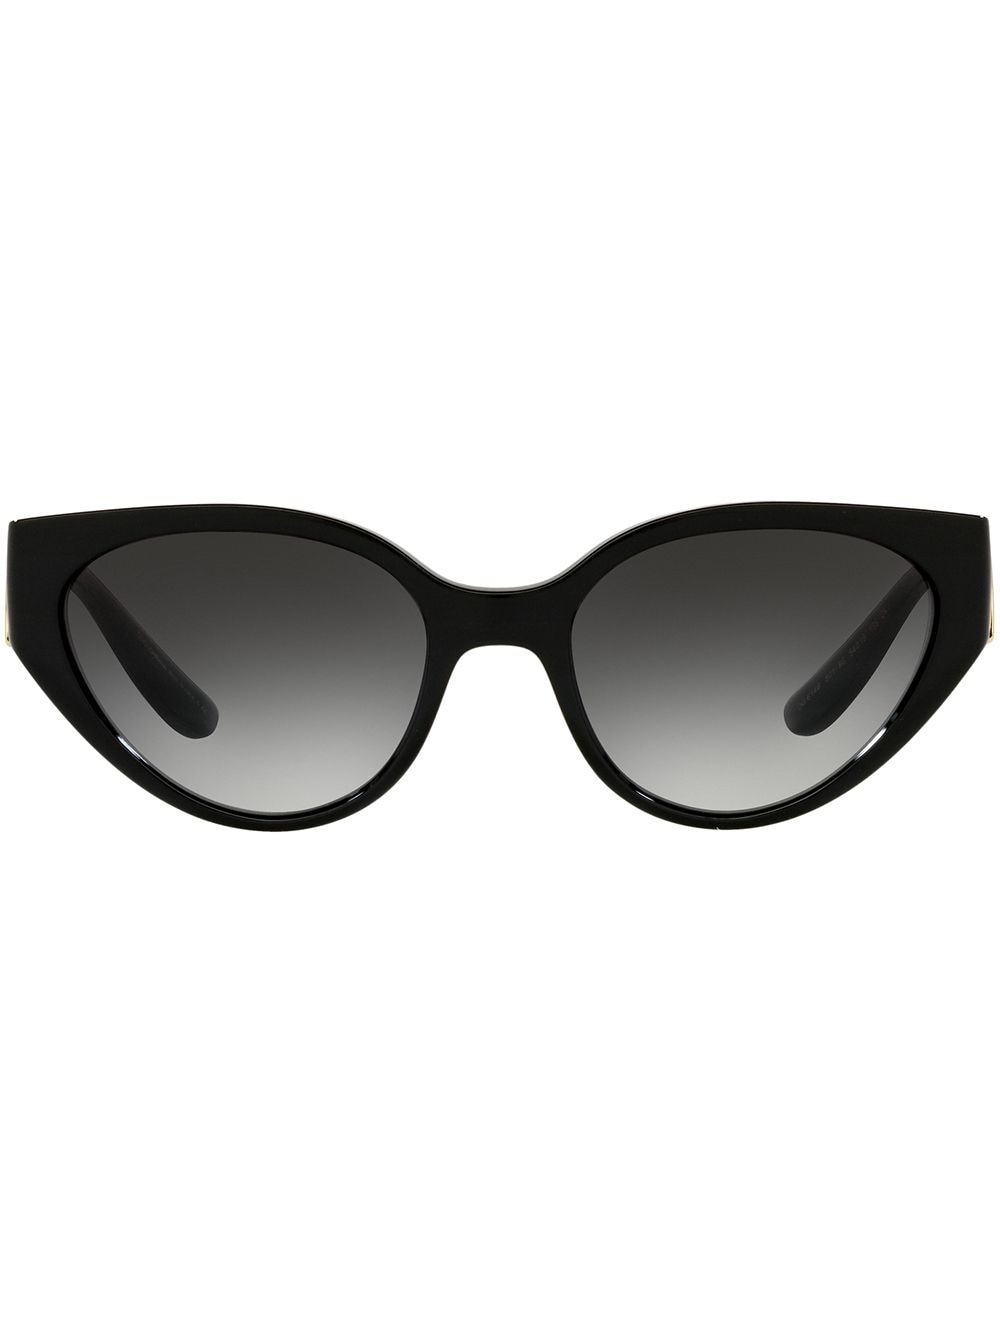 фото Dolce & gabbana eyewear солнцезащитные очки в овальной оправе с монограммой